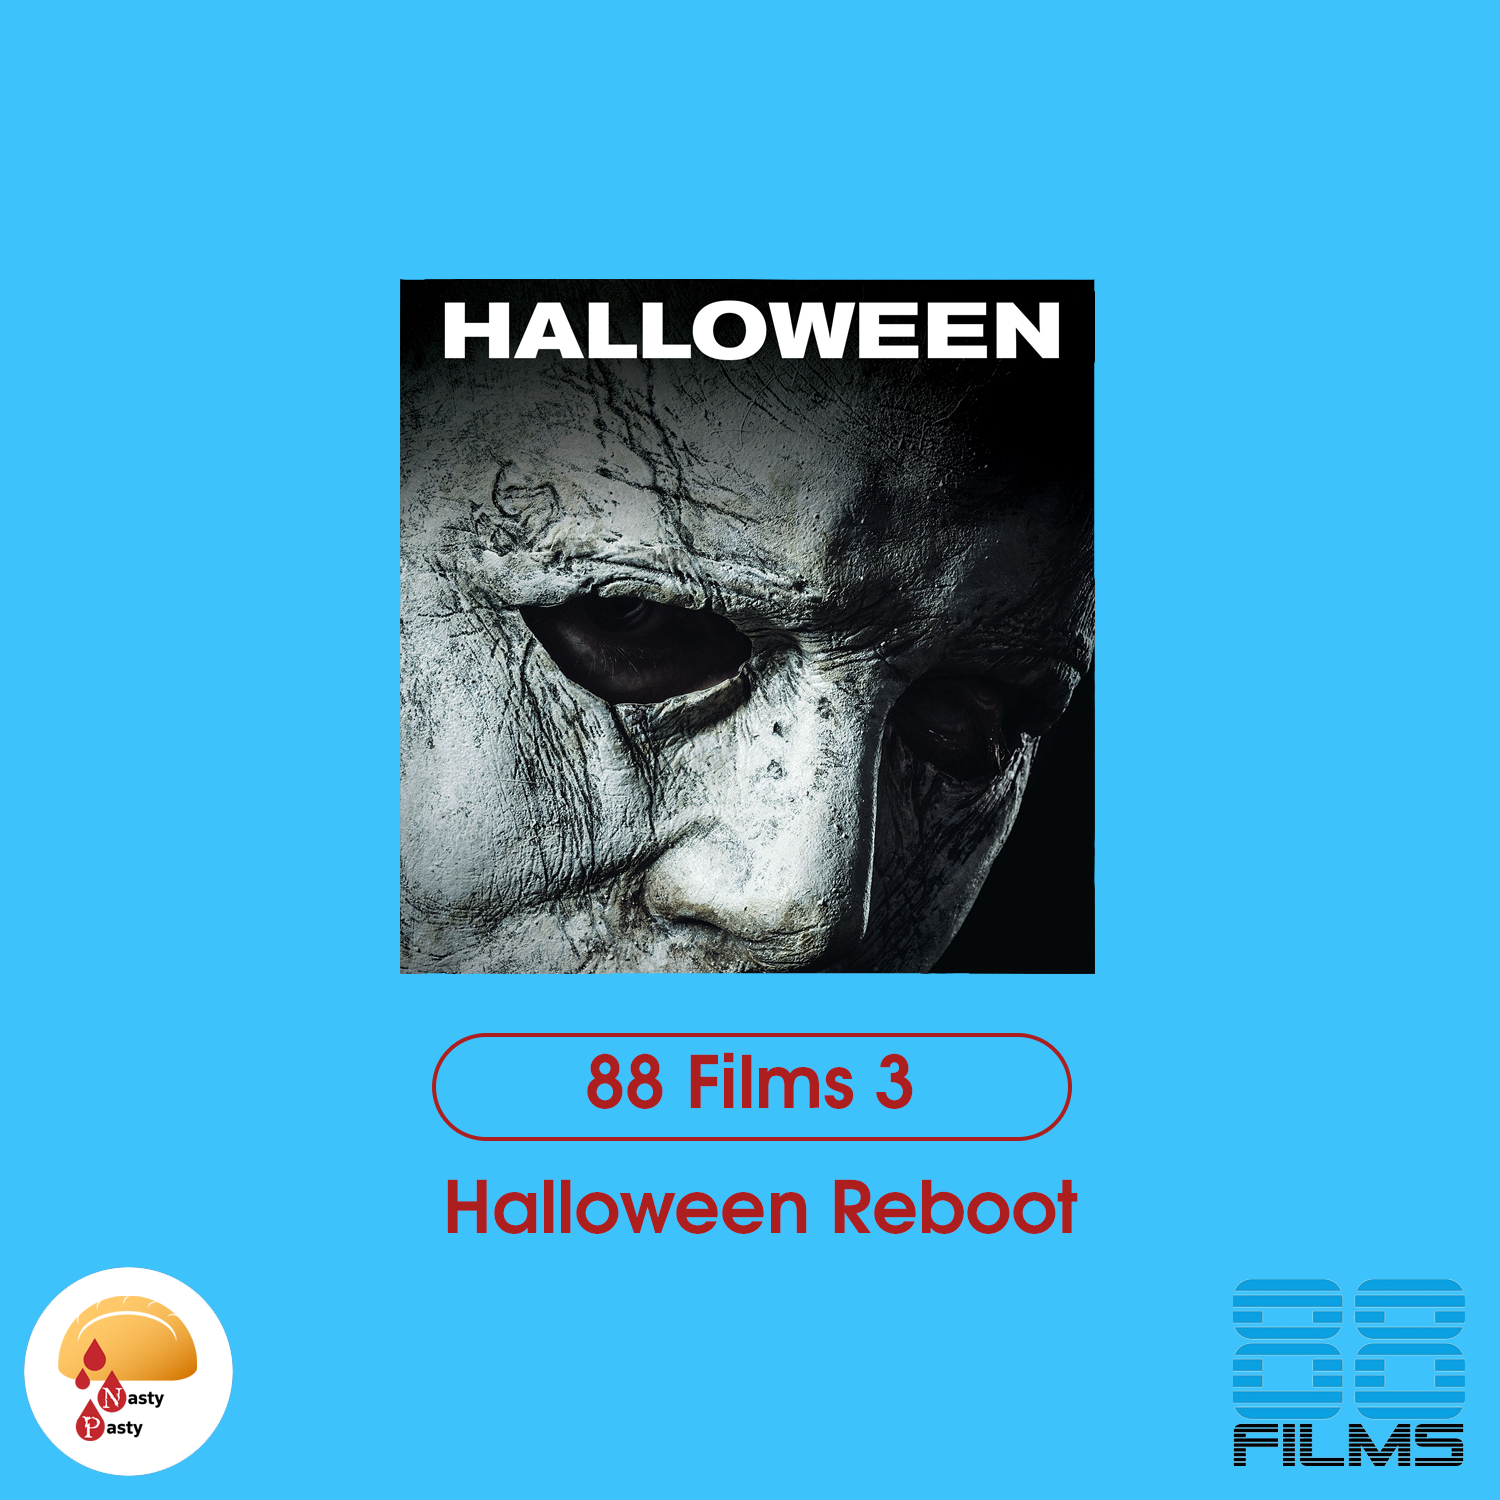 88 Films 3: Halloween Reboot